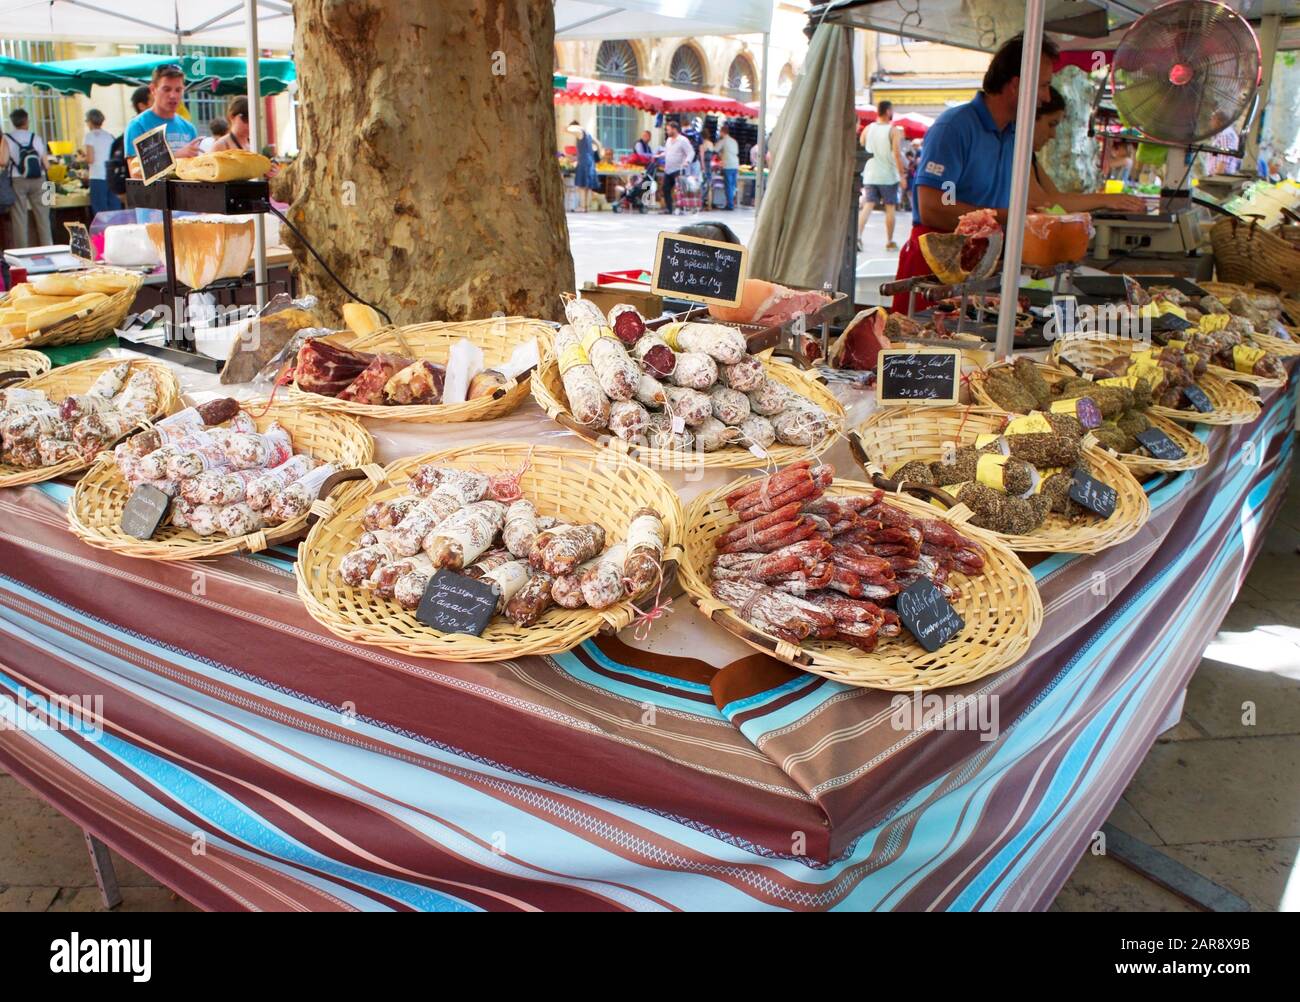 Esposizione di saucissons (salsicce essiccate) in un mercato all'aperto a Aix-en-Provence, Francia Foto Stock